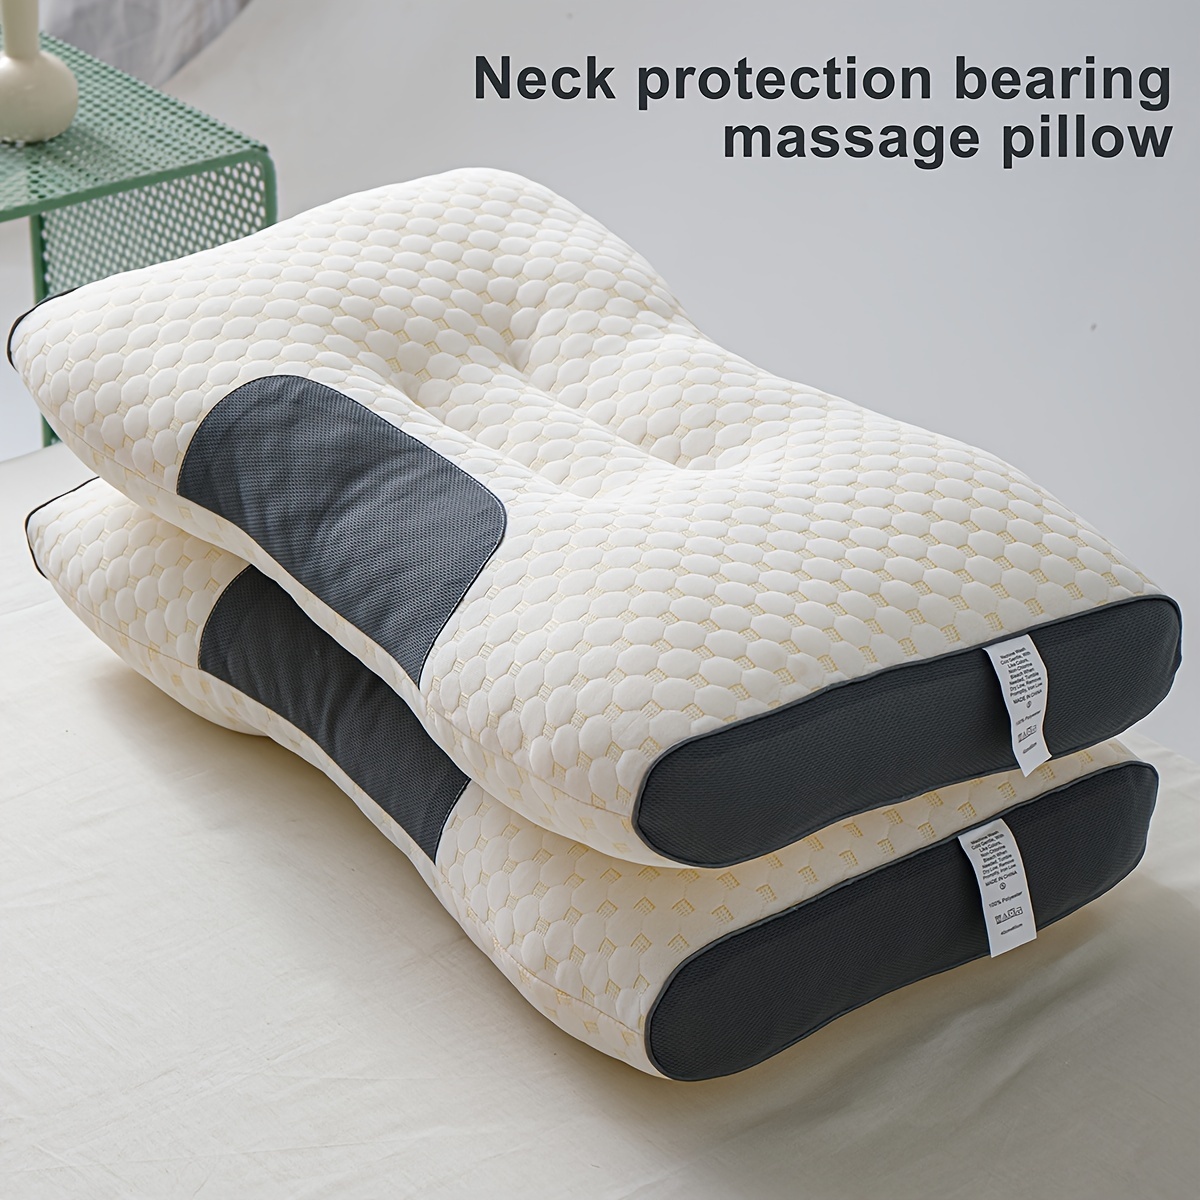 Kaufe Memory-Schaum-Kissen, entspannende zervikale orthopädische  Schlafkissen, Nackenschutz, langsame Rückfederung, ergonomische Kissen